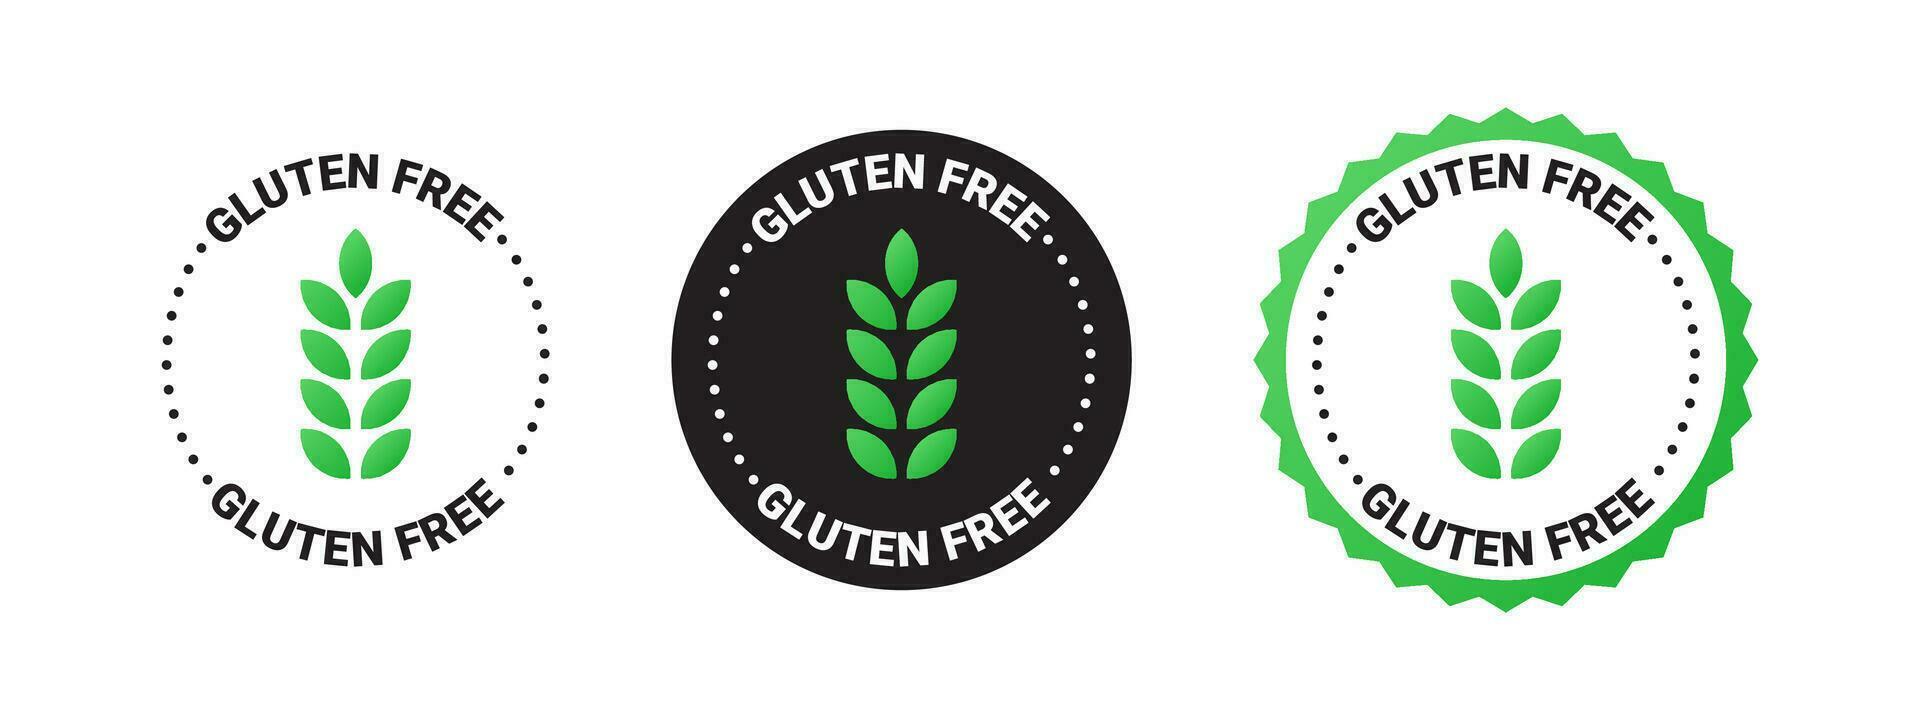 gluten gratis emblemas producto ese lo hace no Contiene gluten. natural y orgánico productos vector escalable gráficos